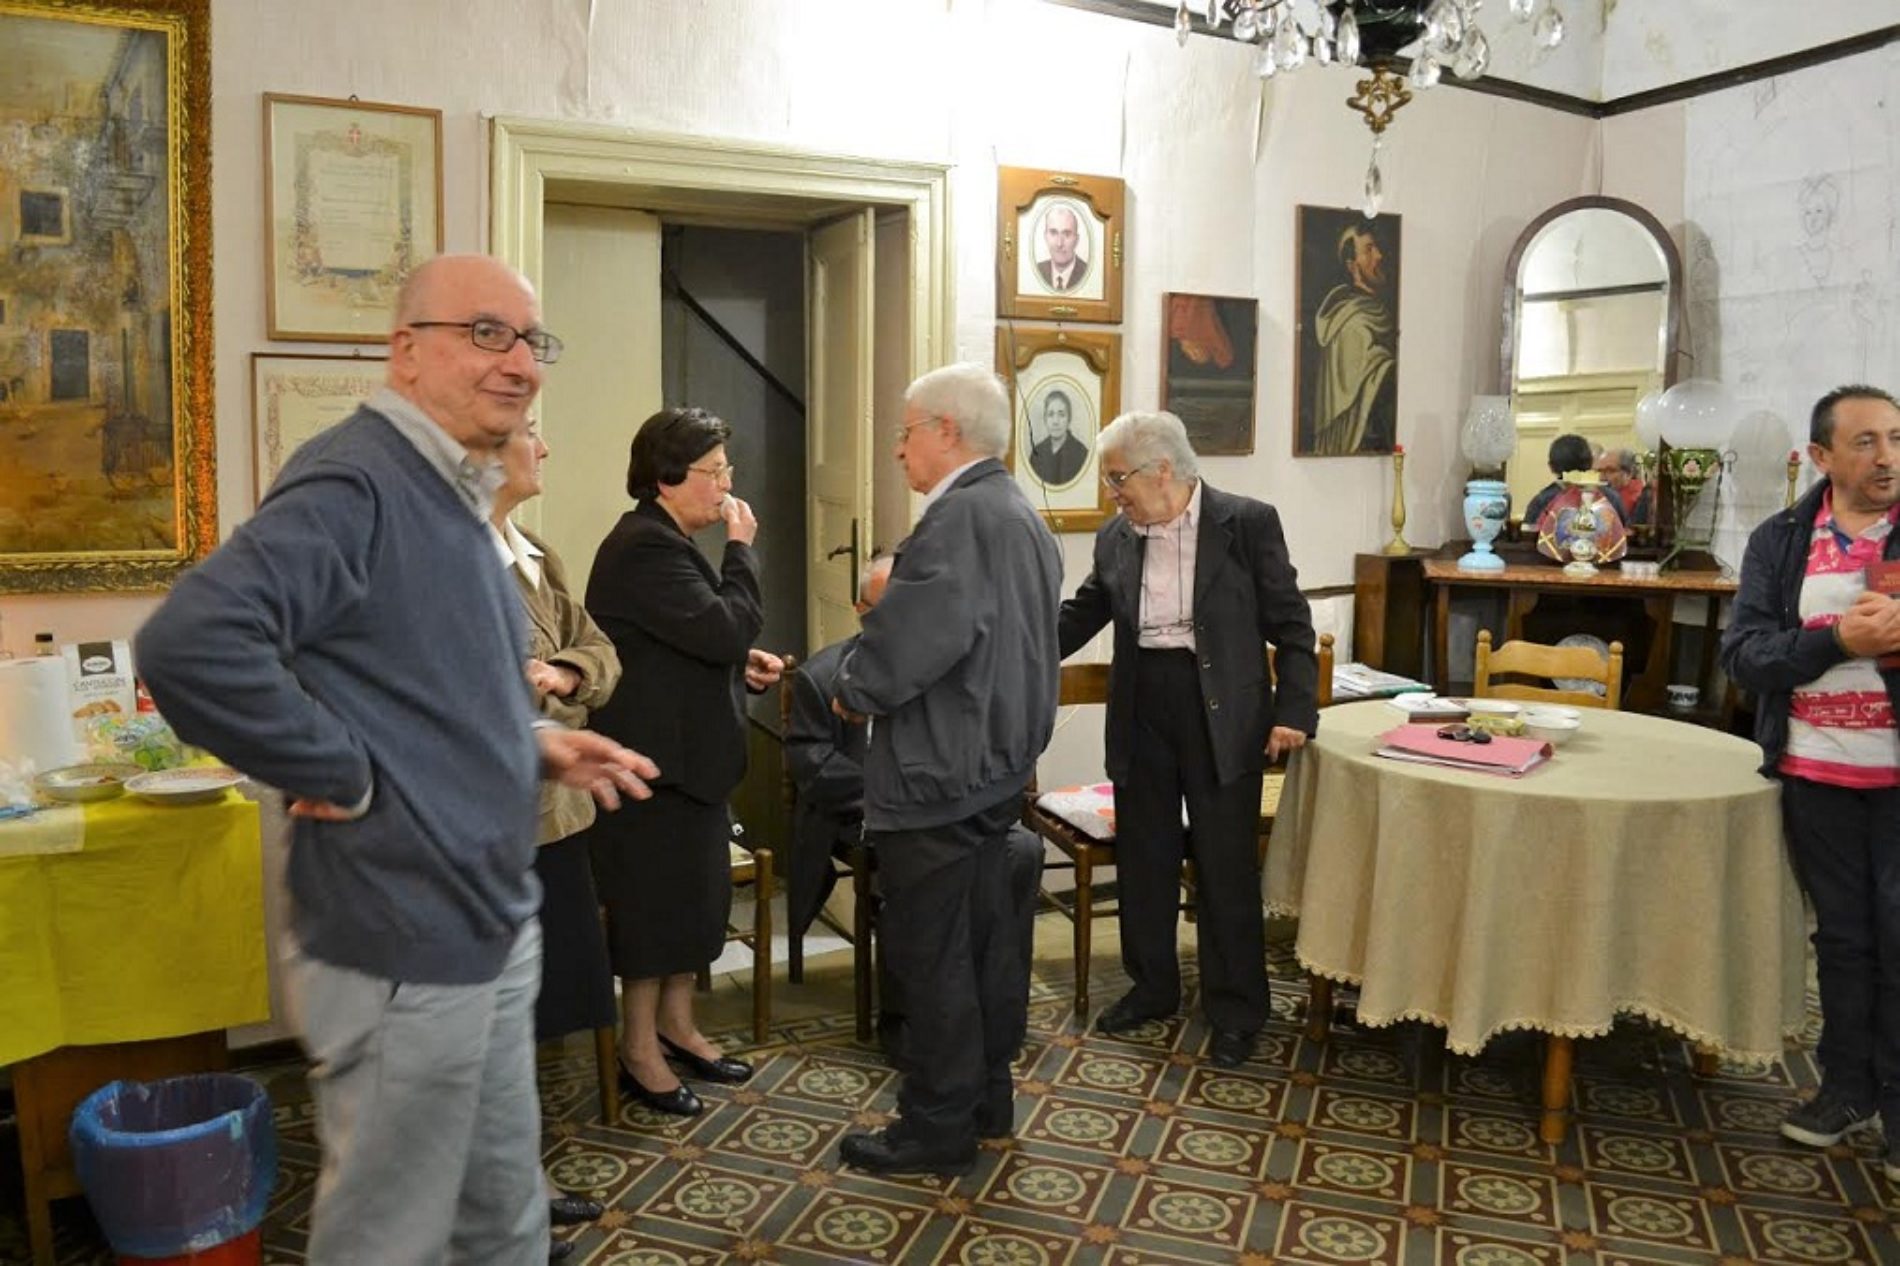 Il Salotto artistico-letterario “Civico 49” ospita il poeta novantaduenne Giuseppe Faraci